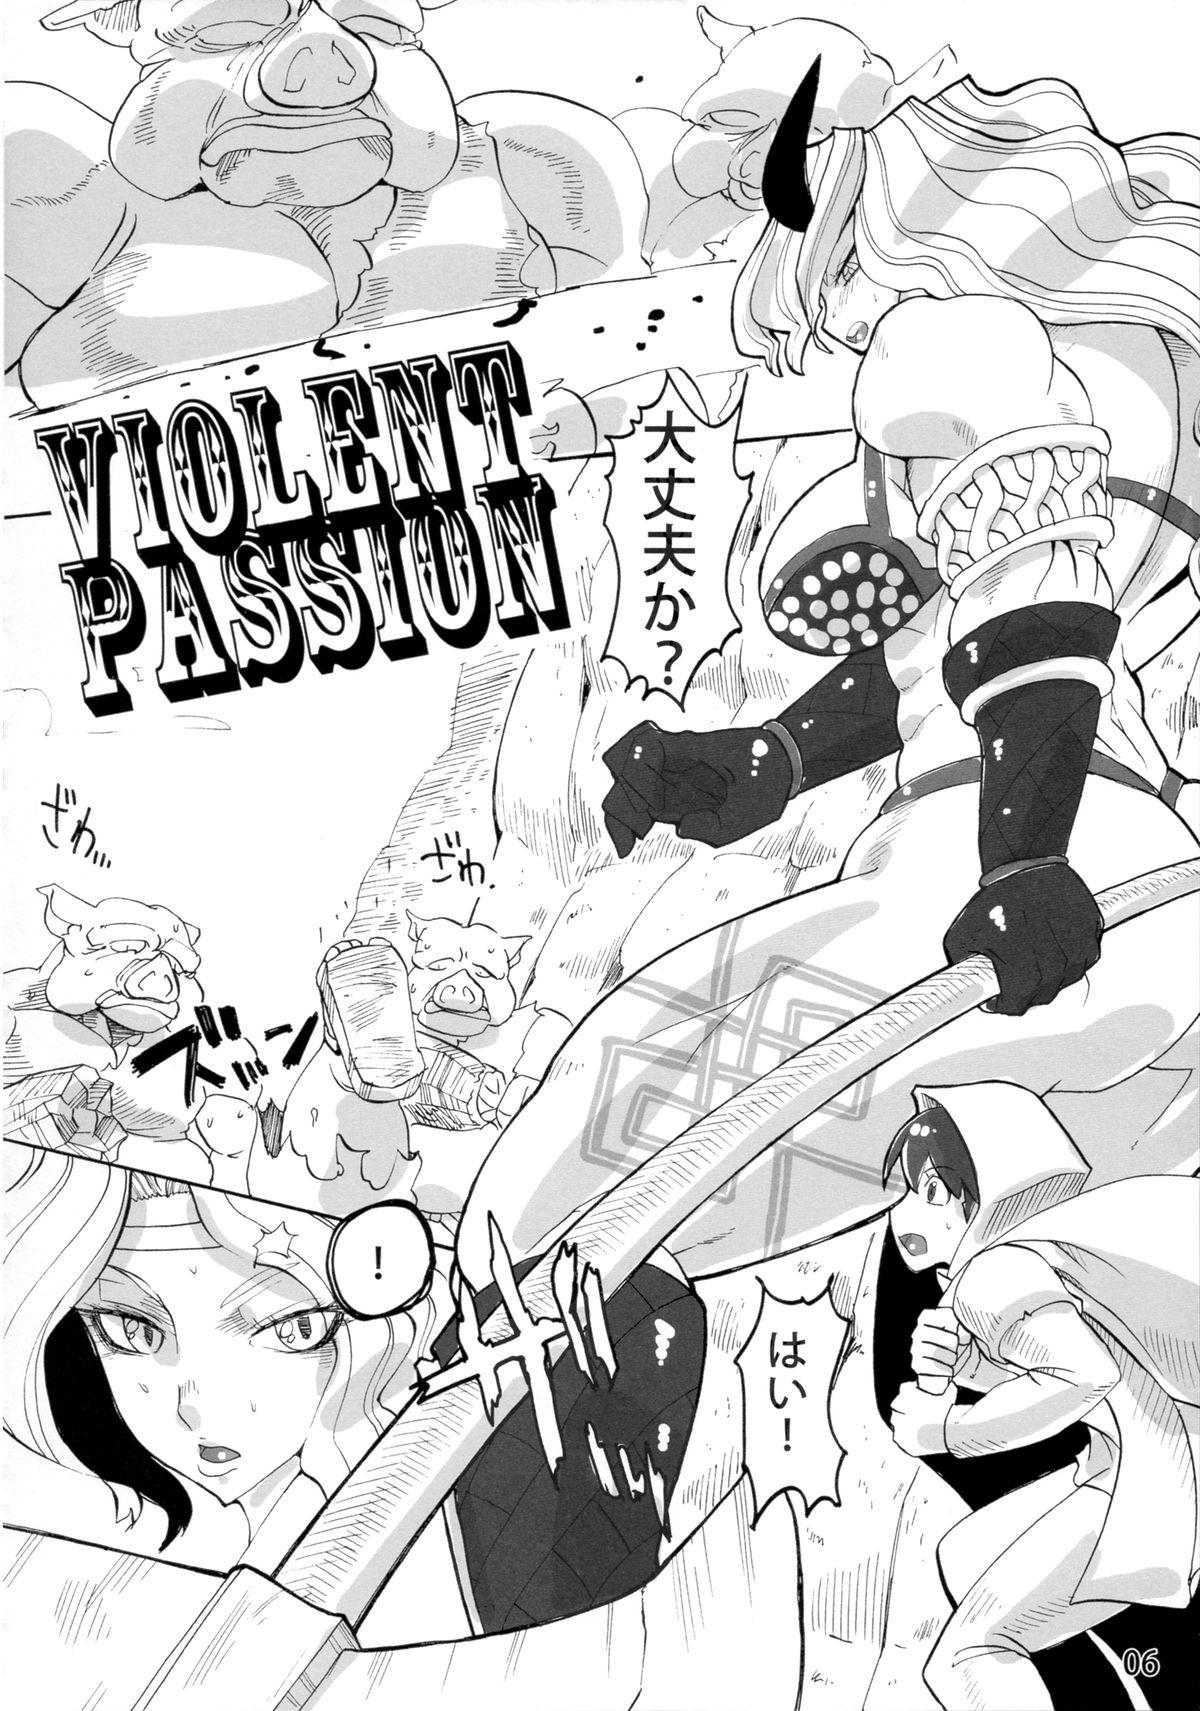 Violent Passion 4